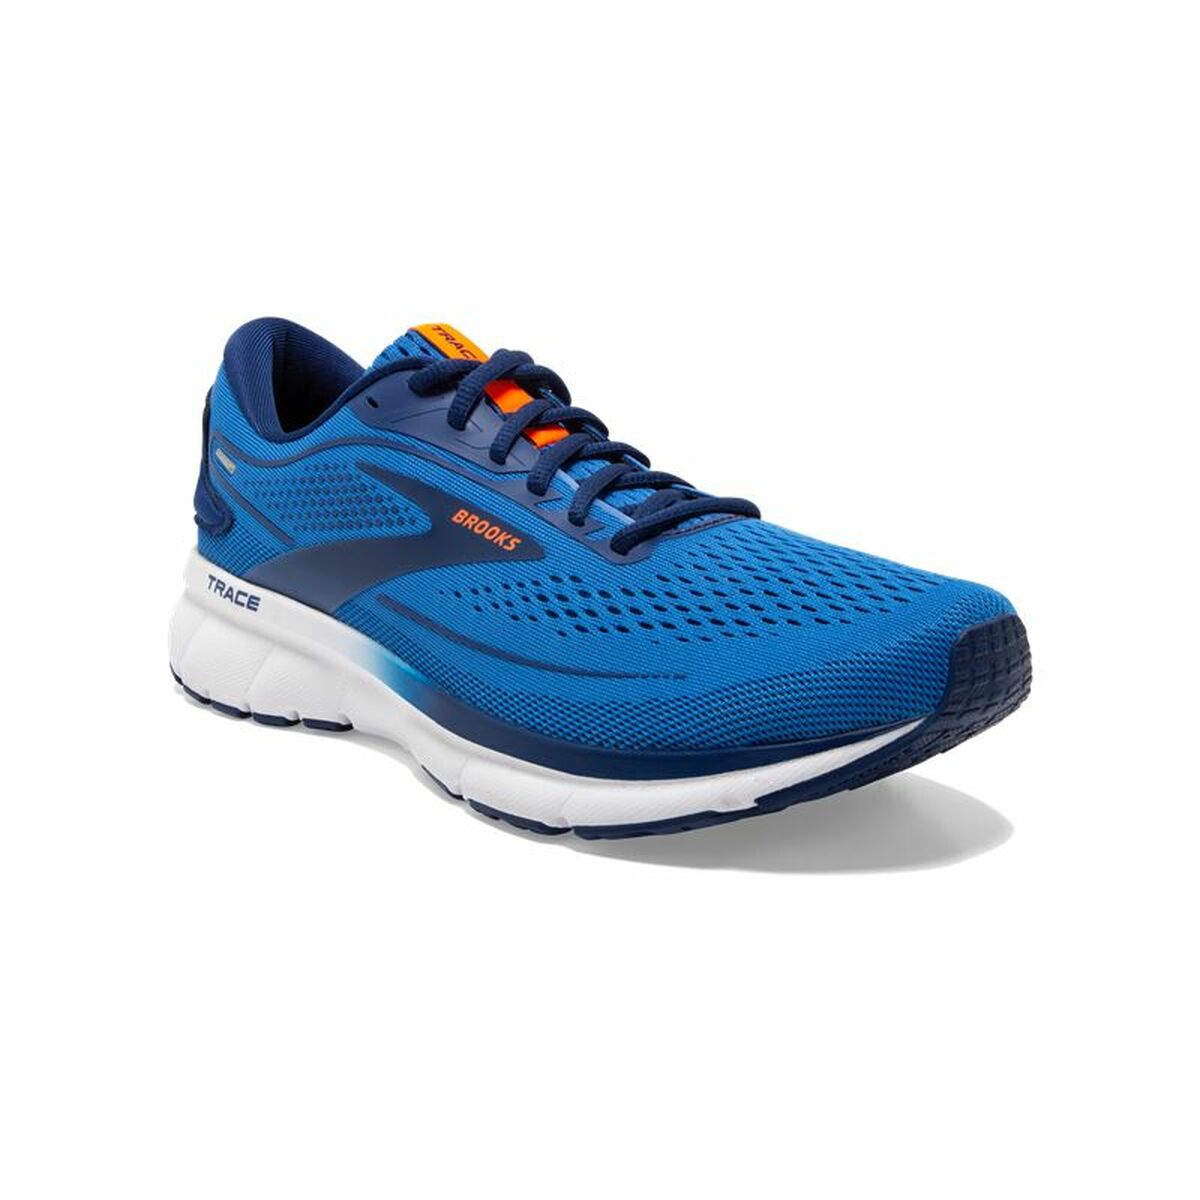 Chaussures de Running pour Adultes Brooks Trace 2 Bleu